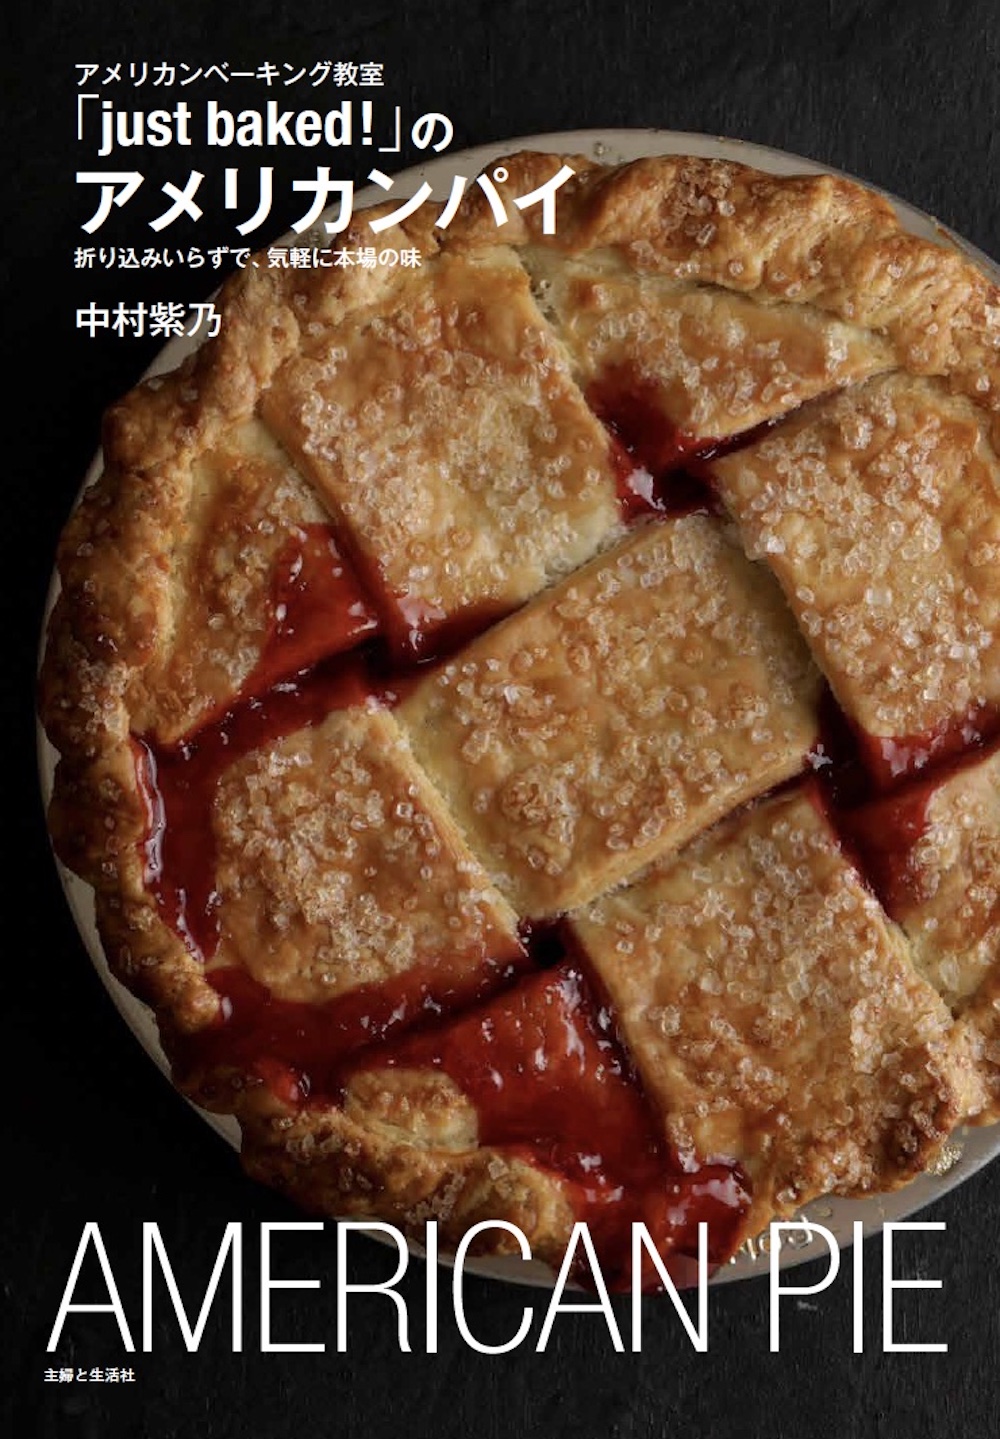 10月13日より、パイに特化したレシピ集「アメリカンベーキング教室『just baked!』のアメリカンパイ　折り込みいらずで、気軽に本場の味」（主婦と生活社）が販売される。価格は税込み1,760円。